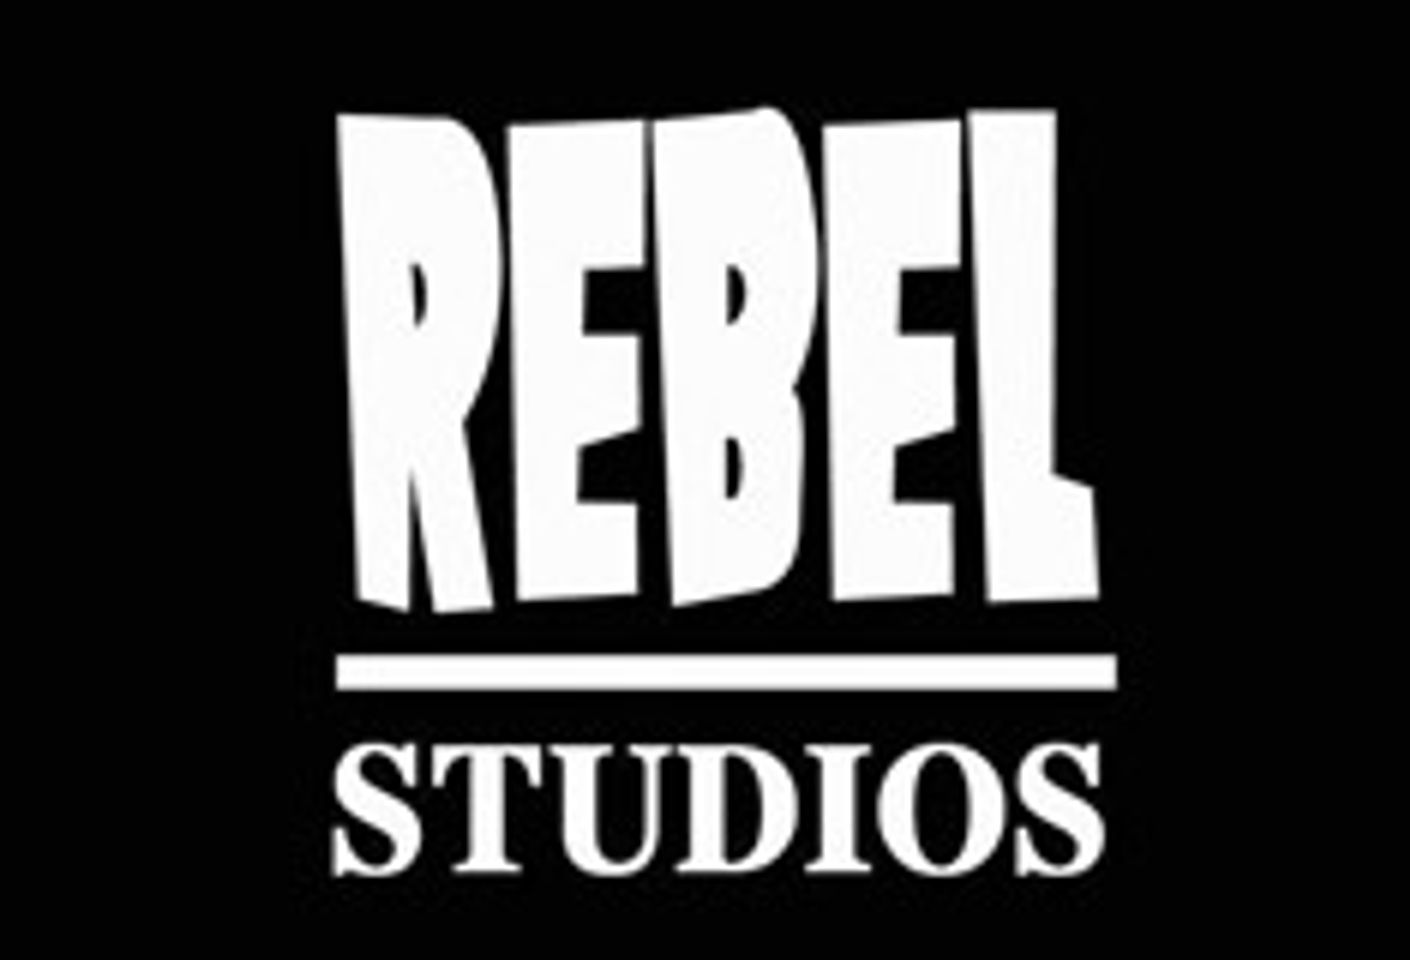 Things Get Hairy at Rebel Studios